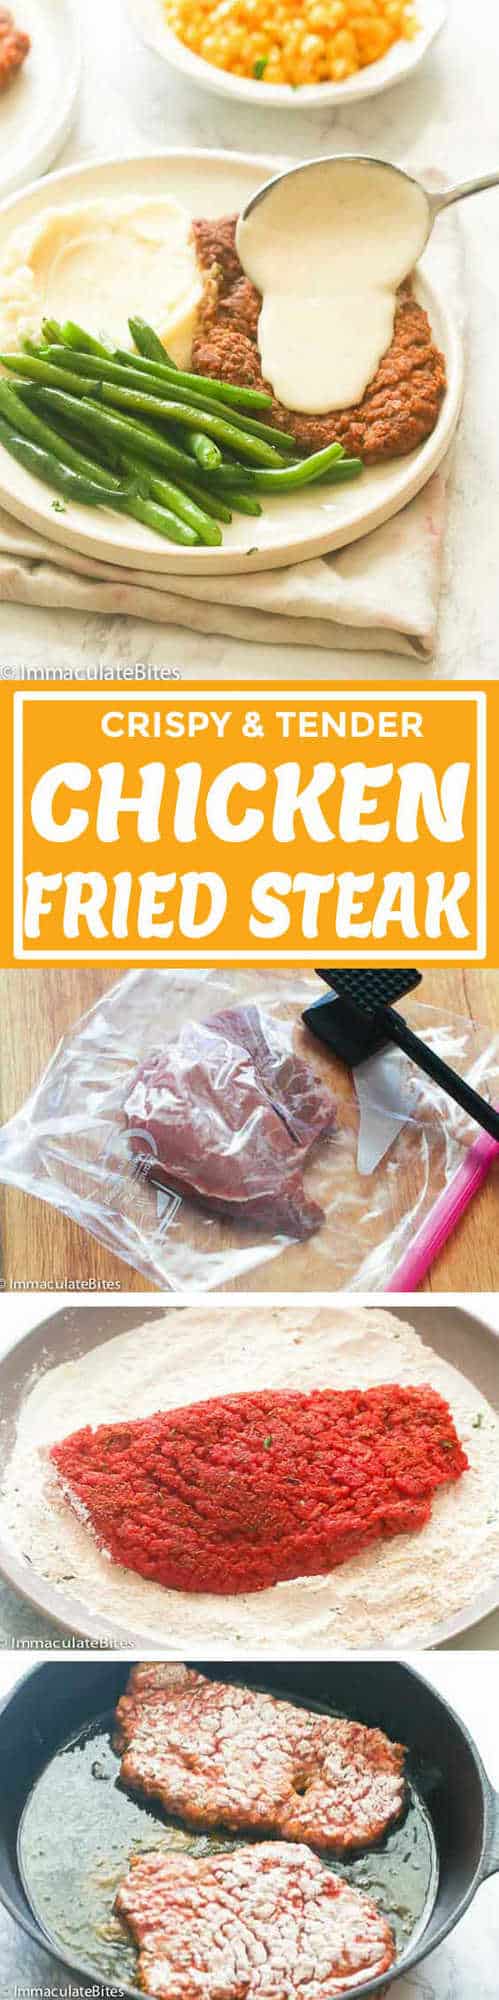 Chicken Fried Steak